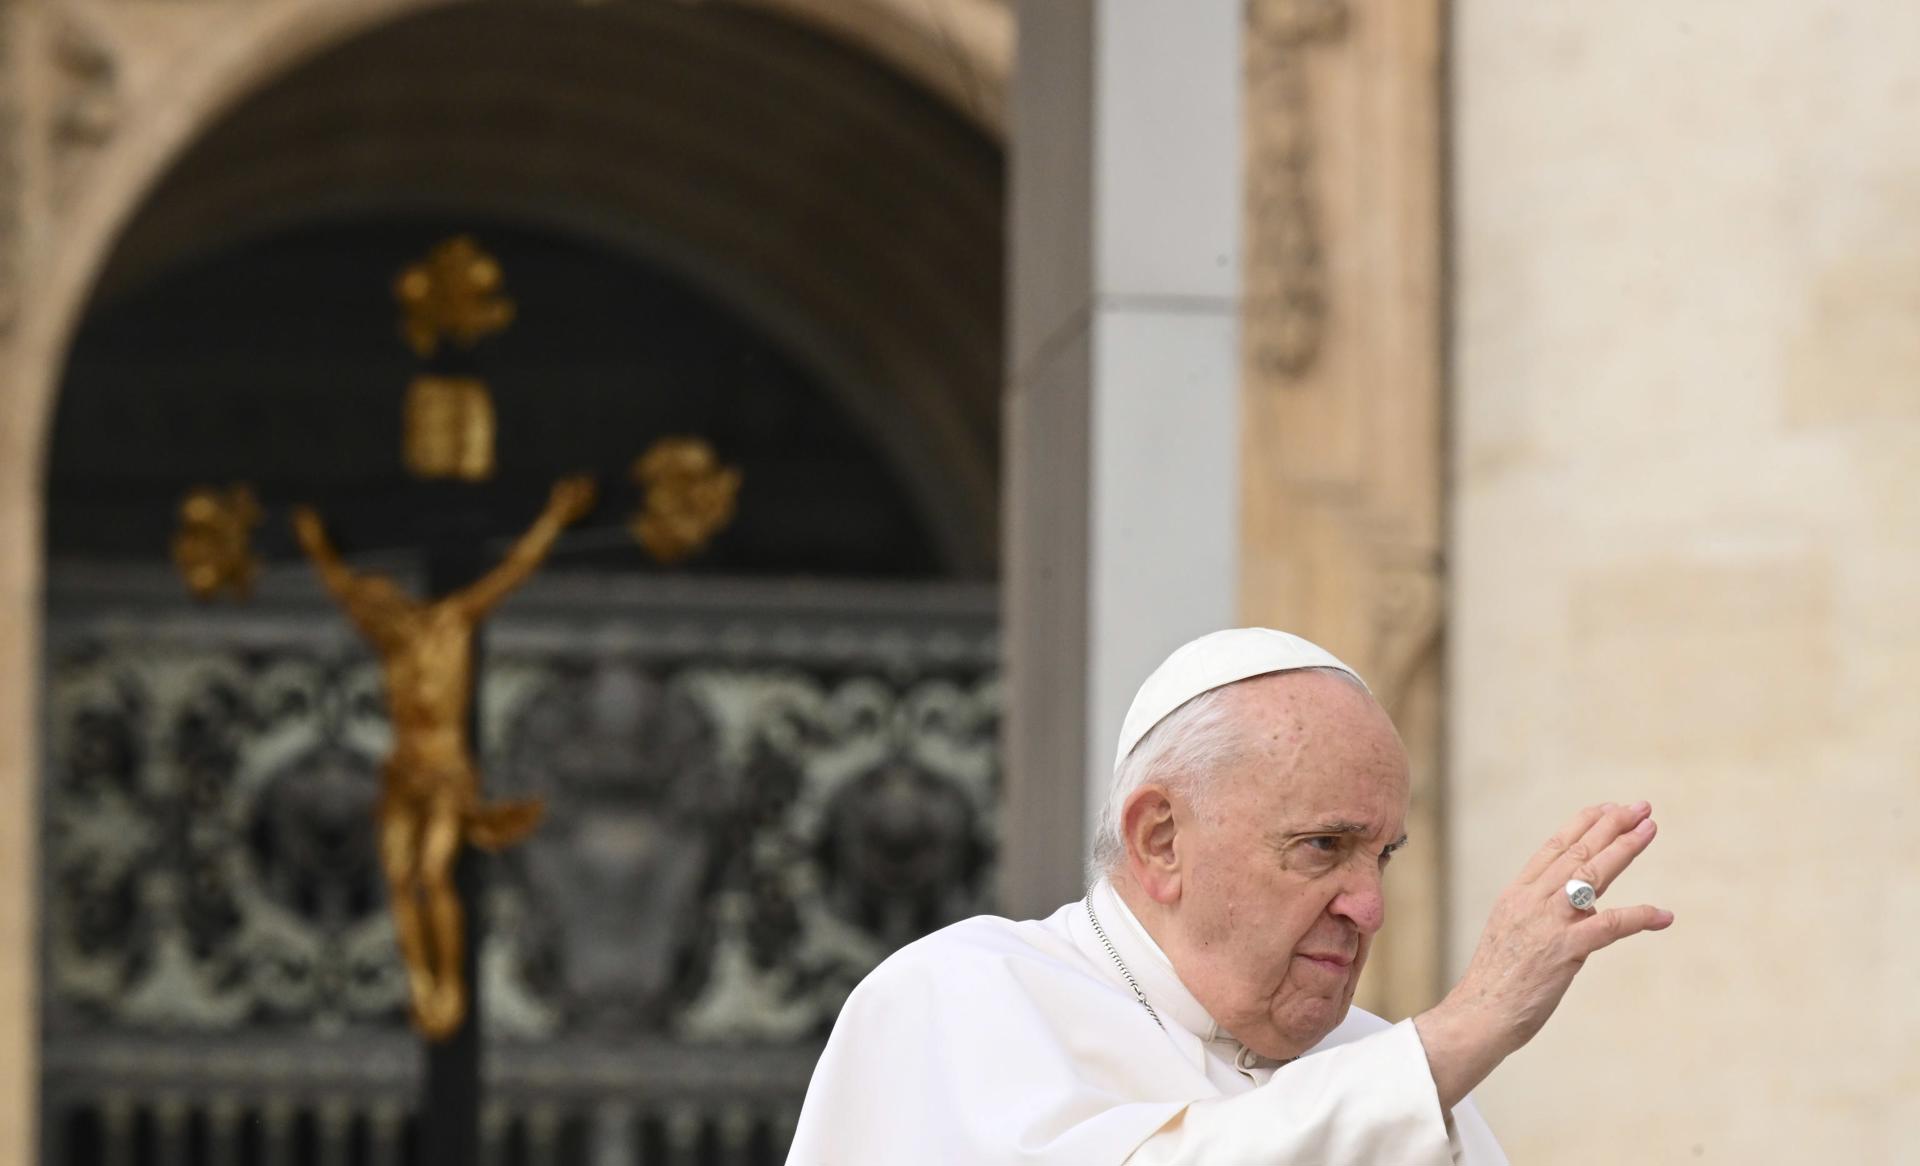 El papa Francisco abre la puerta a "revisar" el celibato en la Iglesia católica